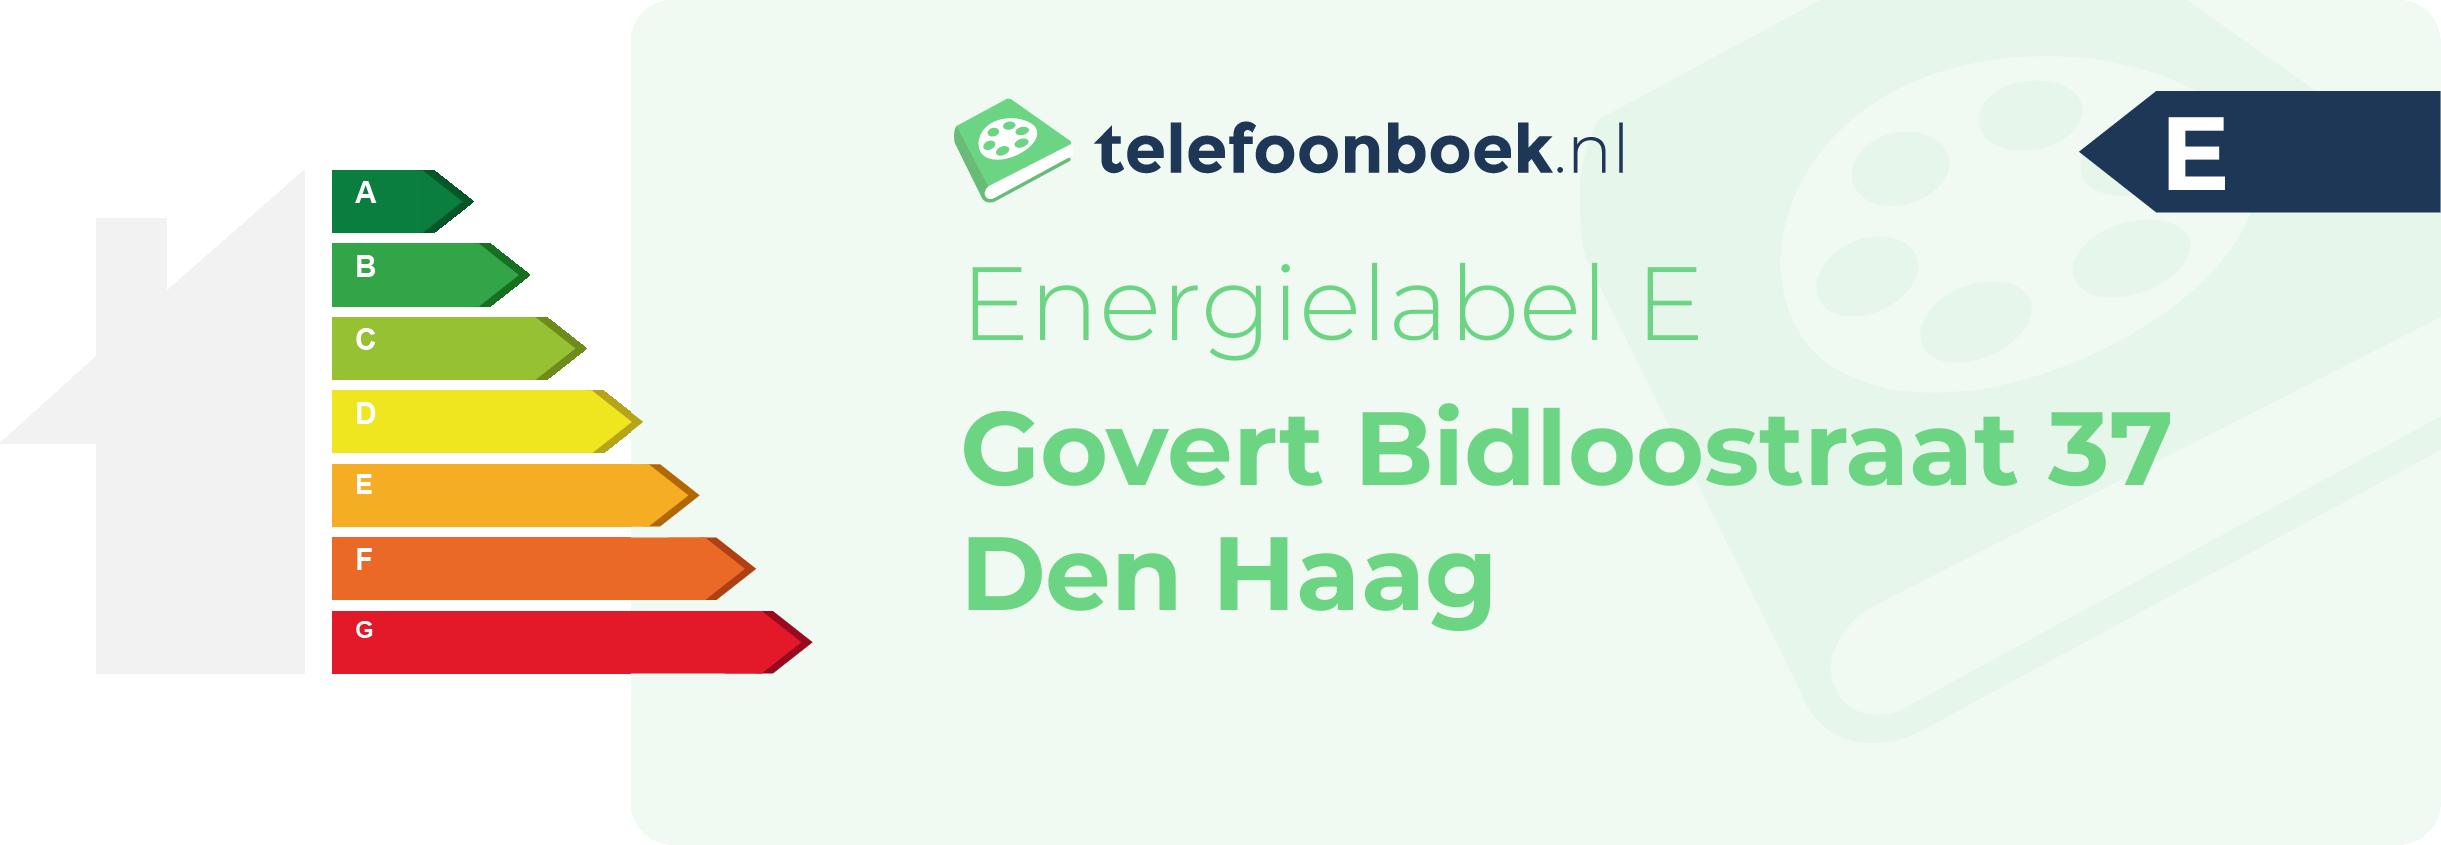 Energielabel Govert Bidloostraat 37 Den Haag